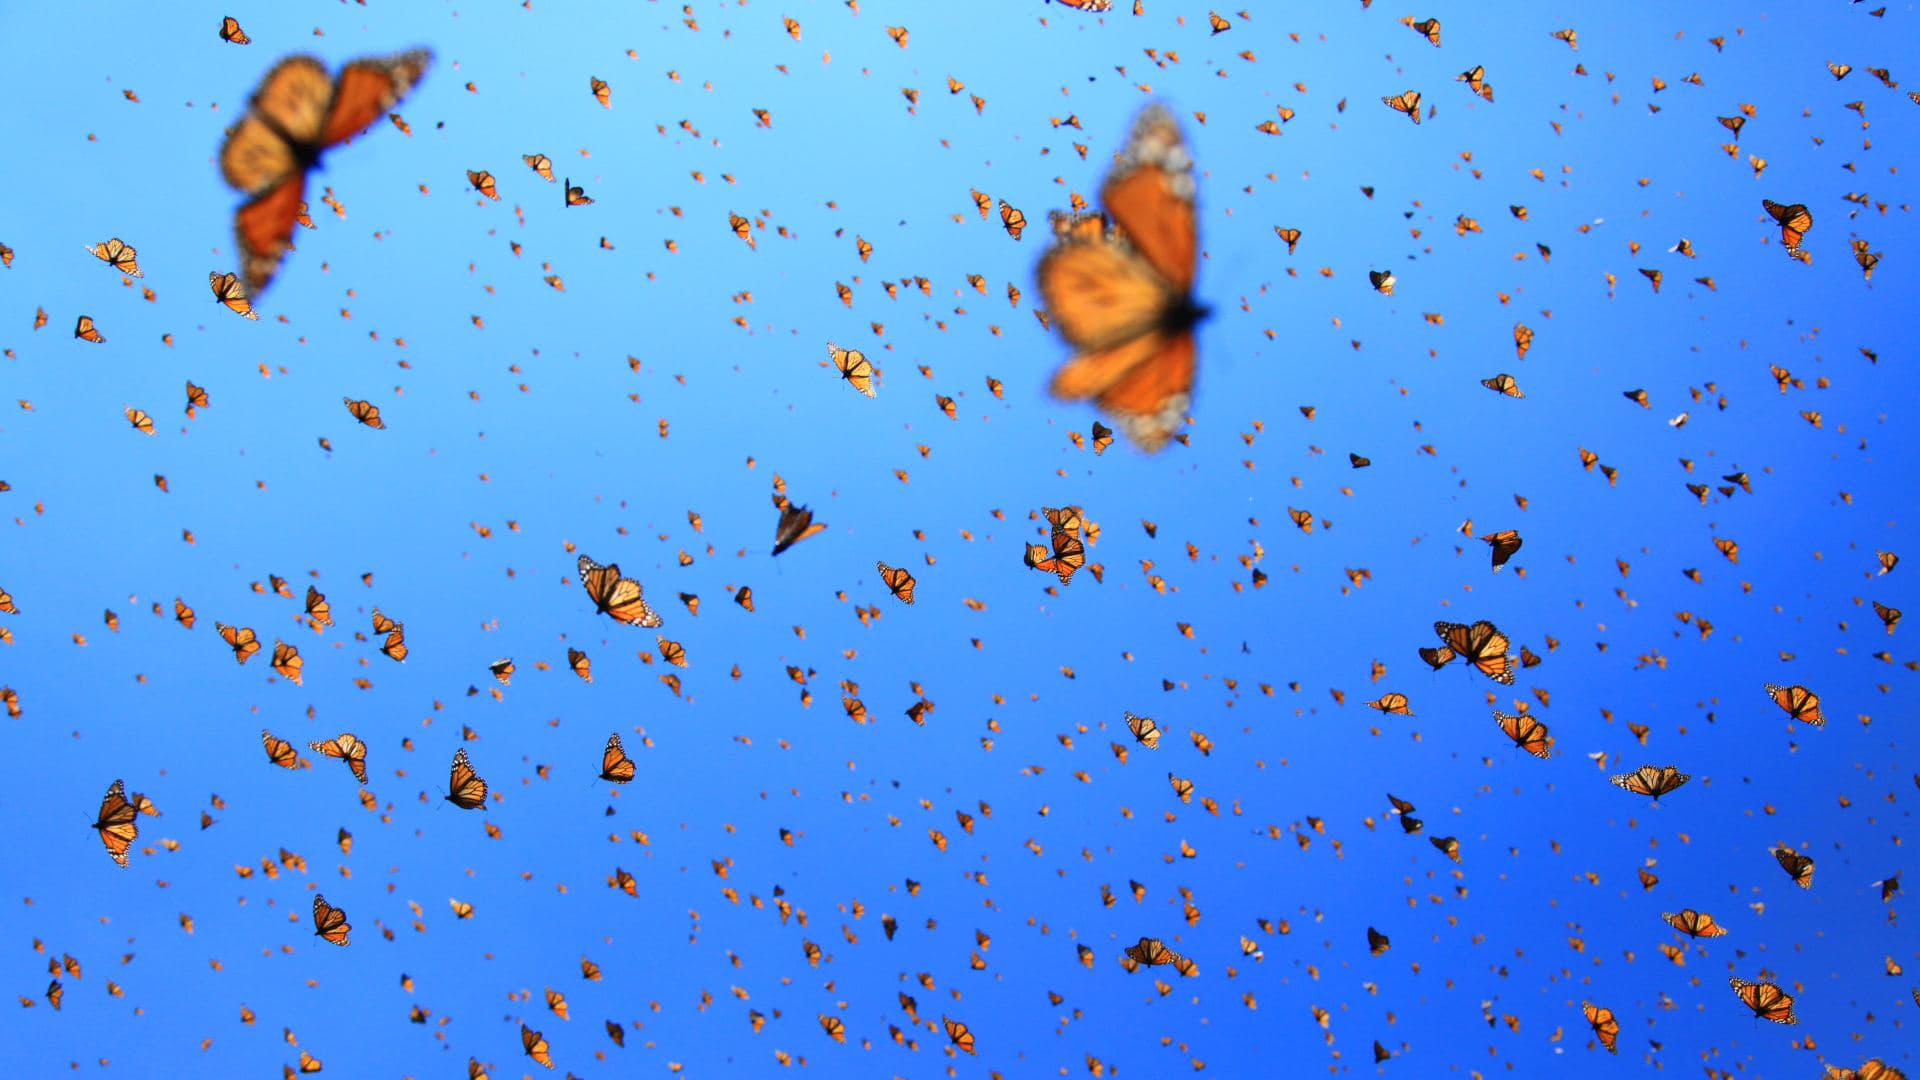 Flight of the Butterflies backdrop